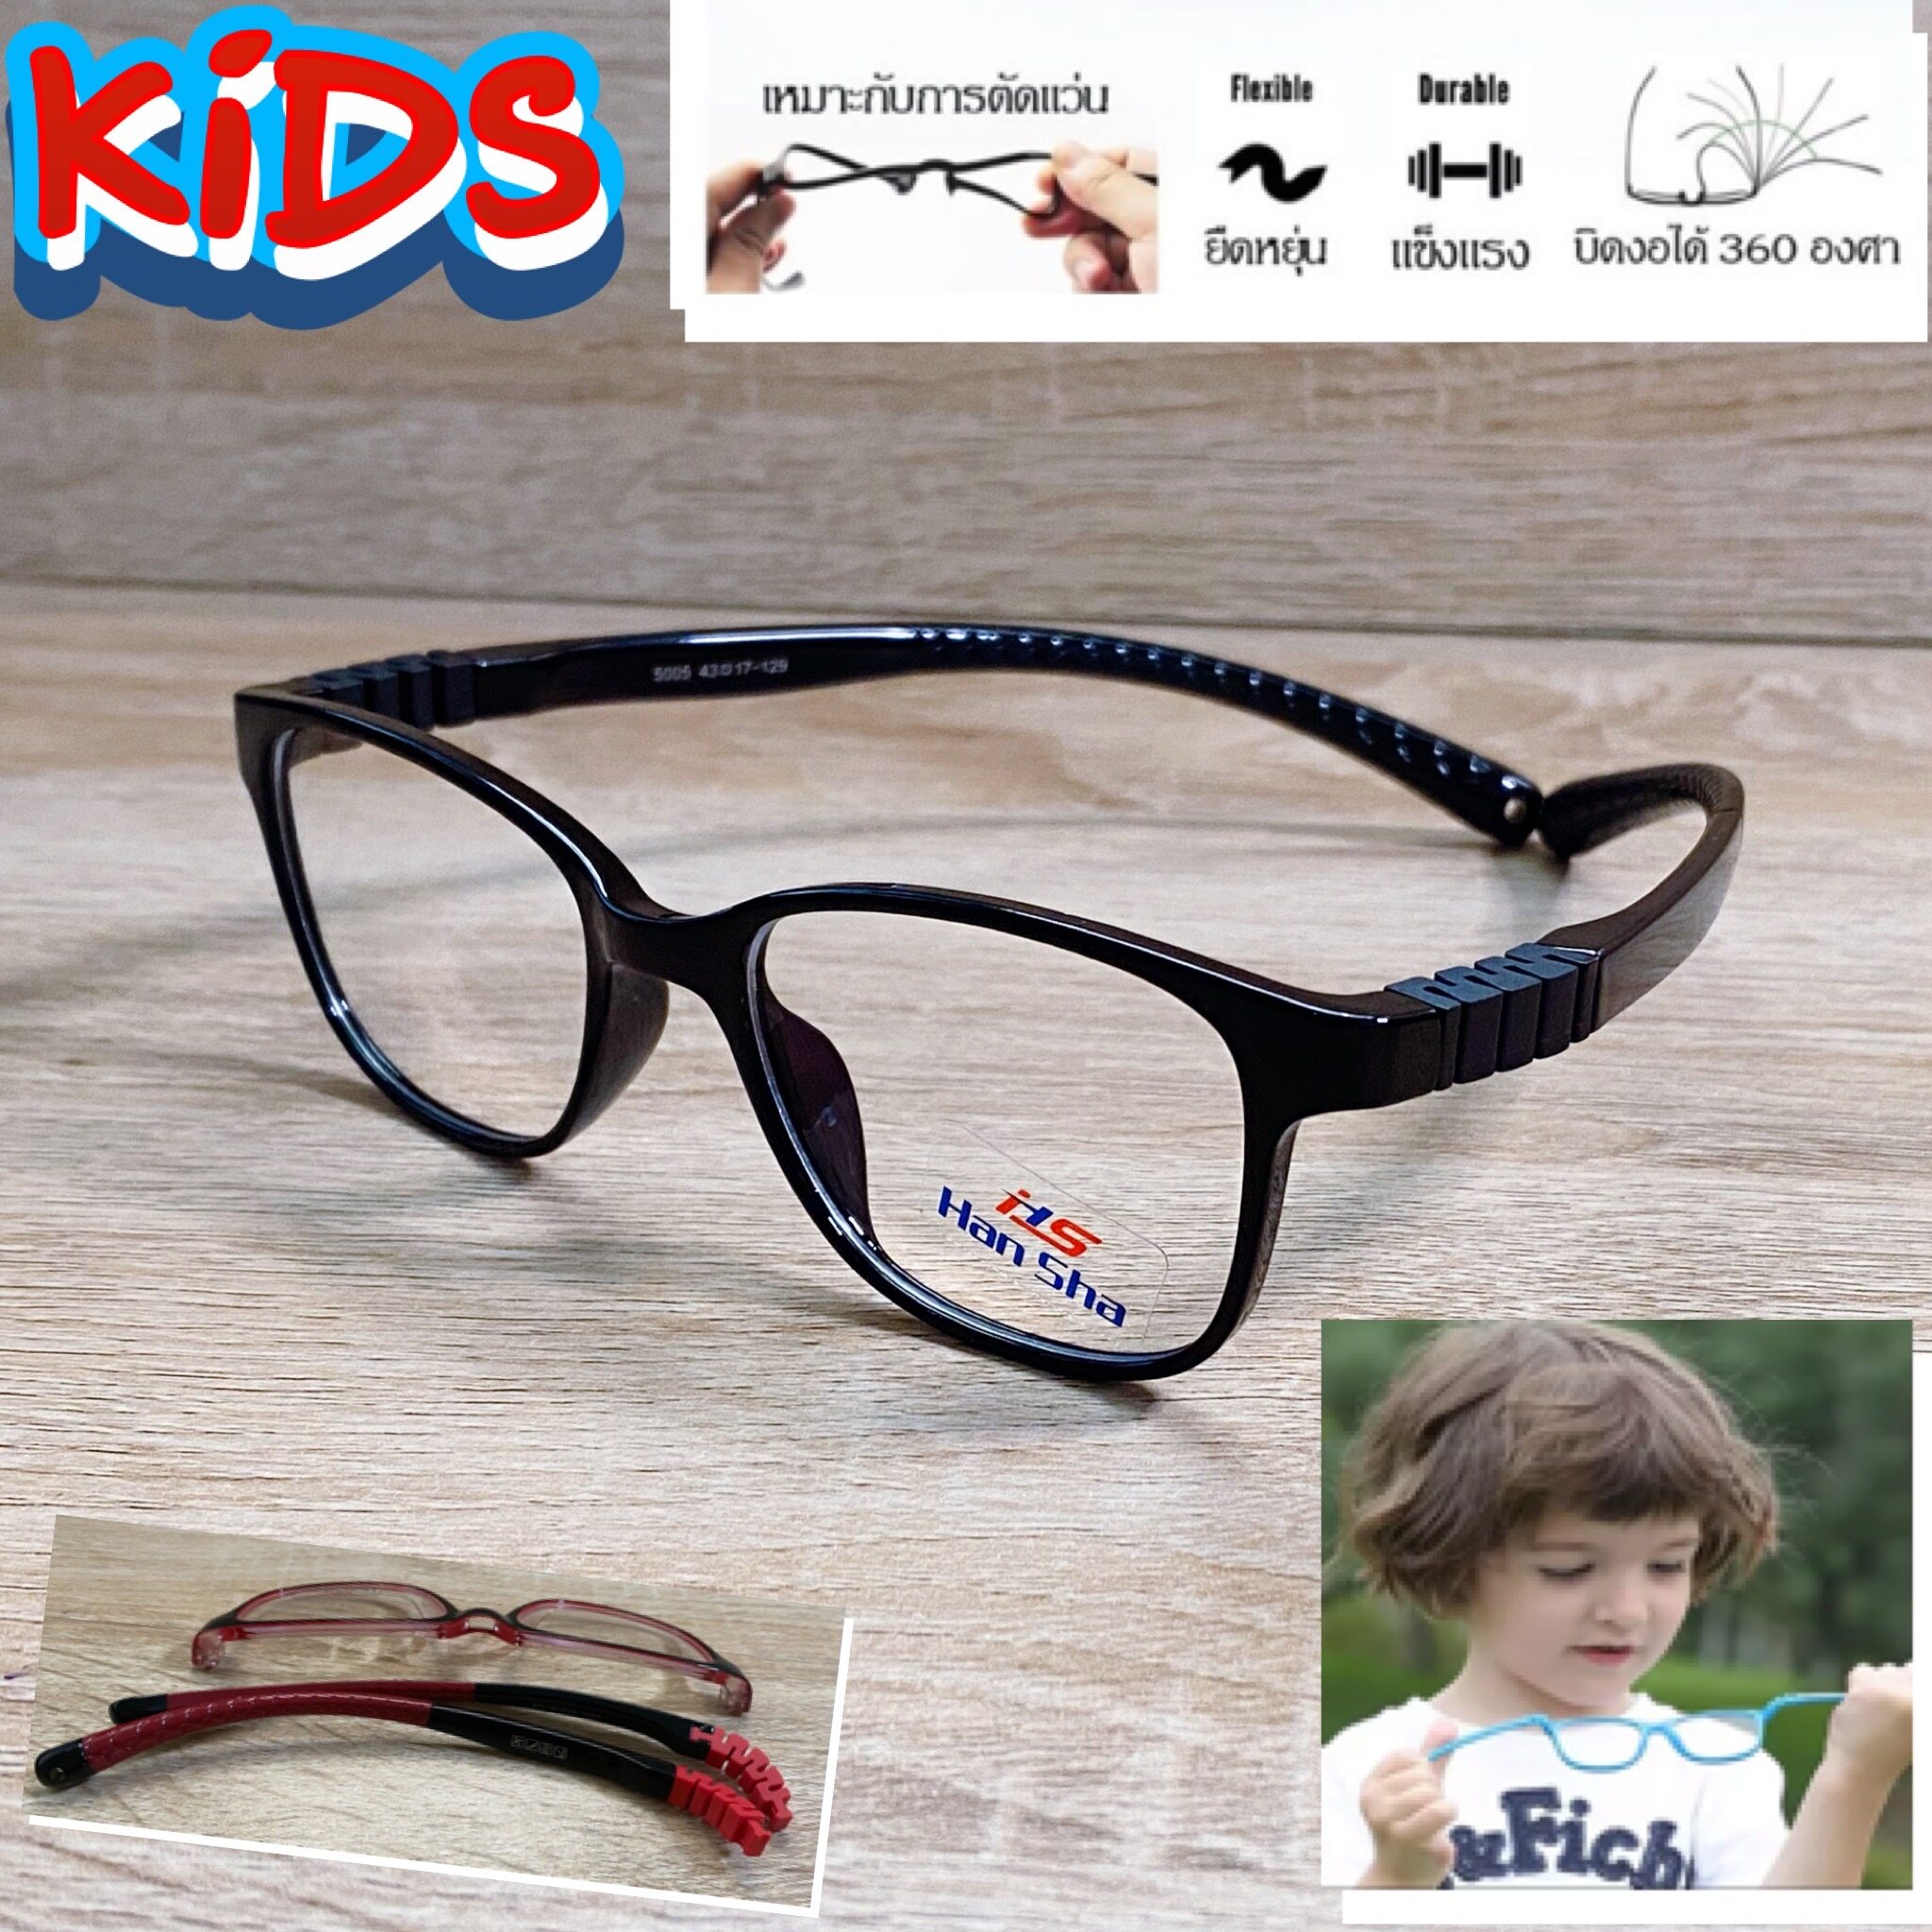 กรอบแว่นตาเด็ก แว่นตาเด็ก สำหรับตัดเลนส์ แว่นตา Han Sha รุ่น 5005 ทรงเหลี่ยม ขาไม่ใช้น็อต ยืดหยุ่น ถอดขาเปลี่ยนได้ วัสดุ TR 90 เบา ไม่แตกหัก